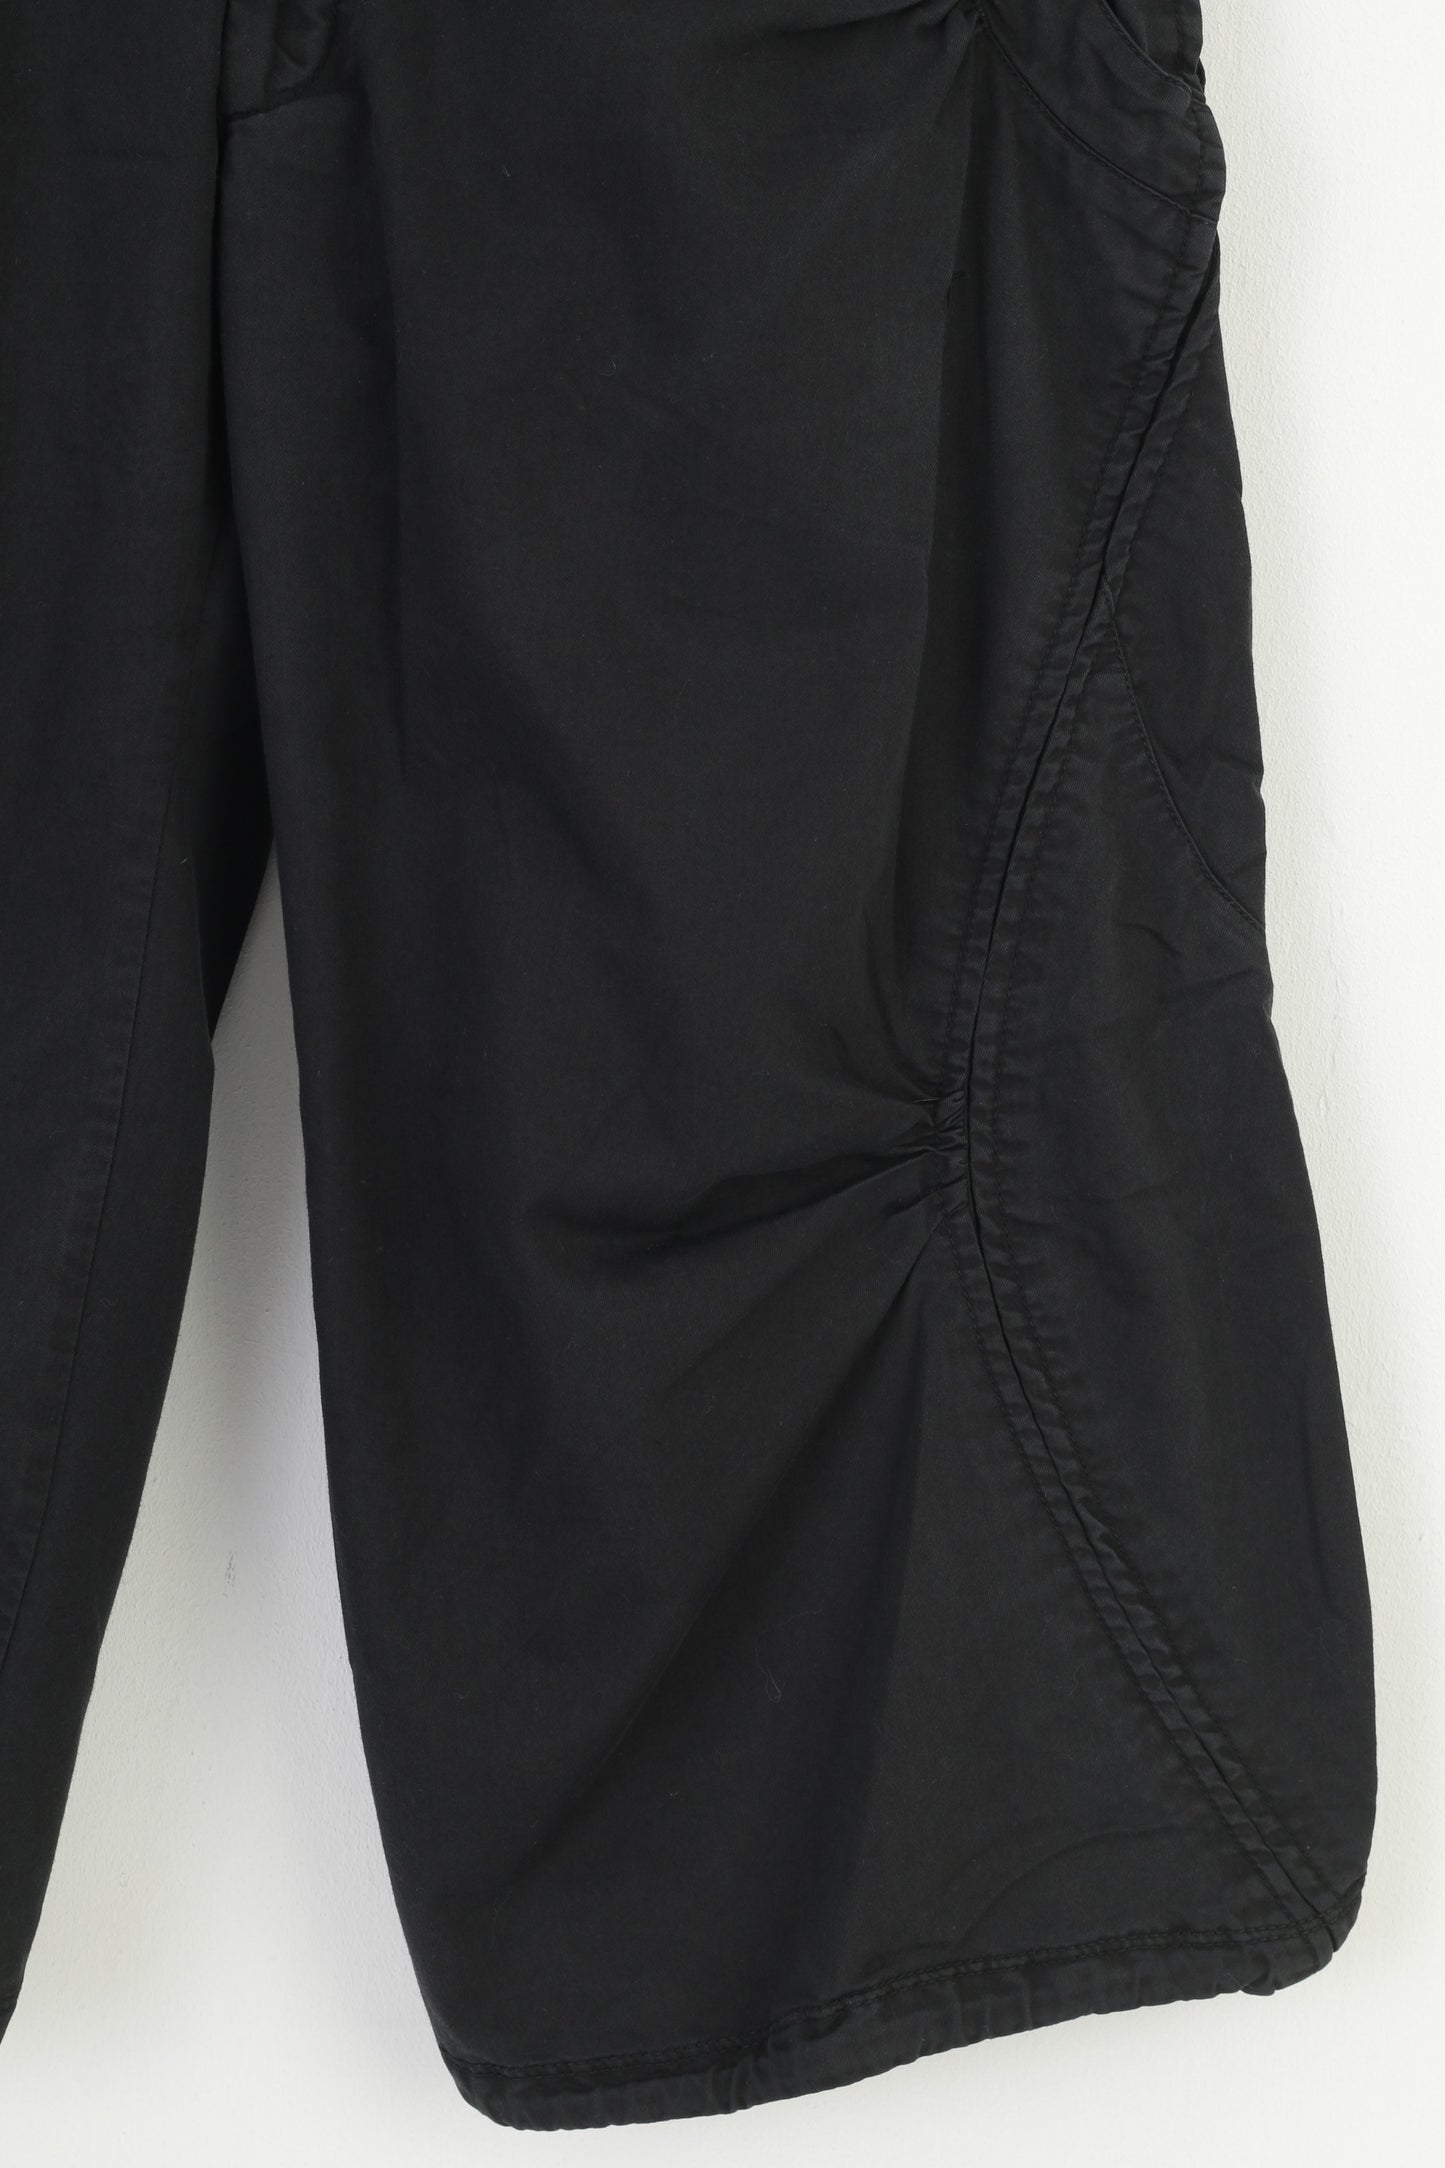 Nike Women 12 40 Shorts Black Fit Dry Studio Fit Trousers Training Outwear Sportswear Pants